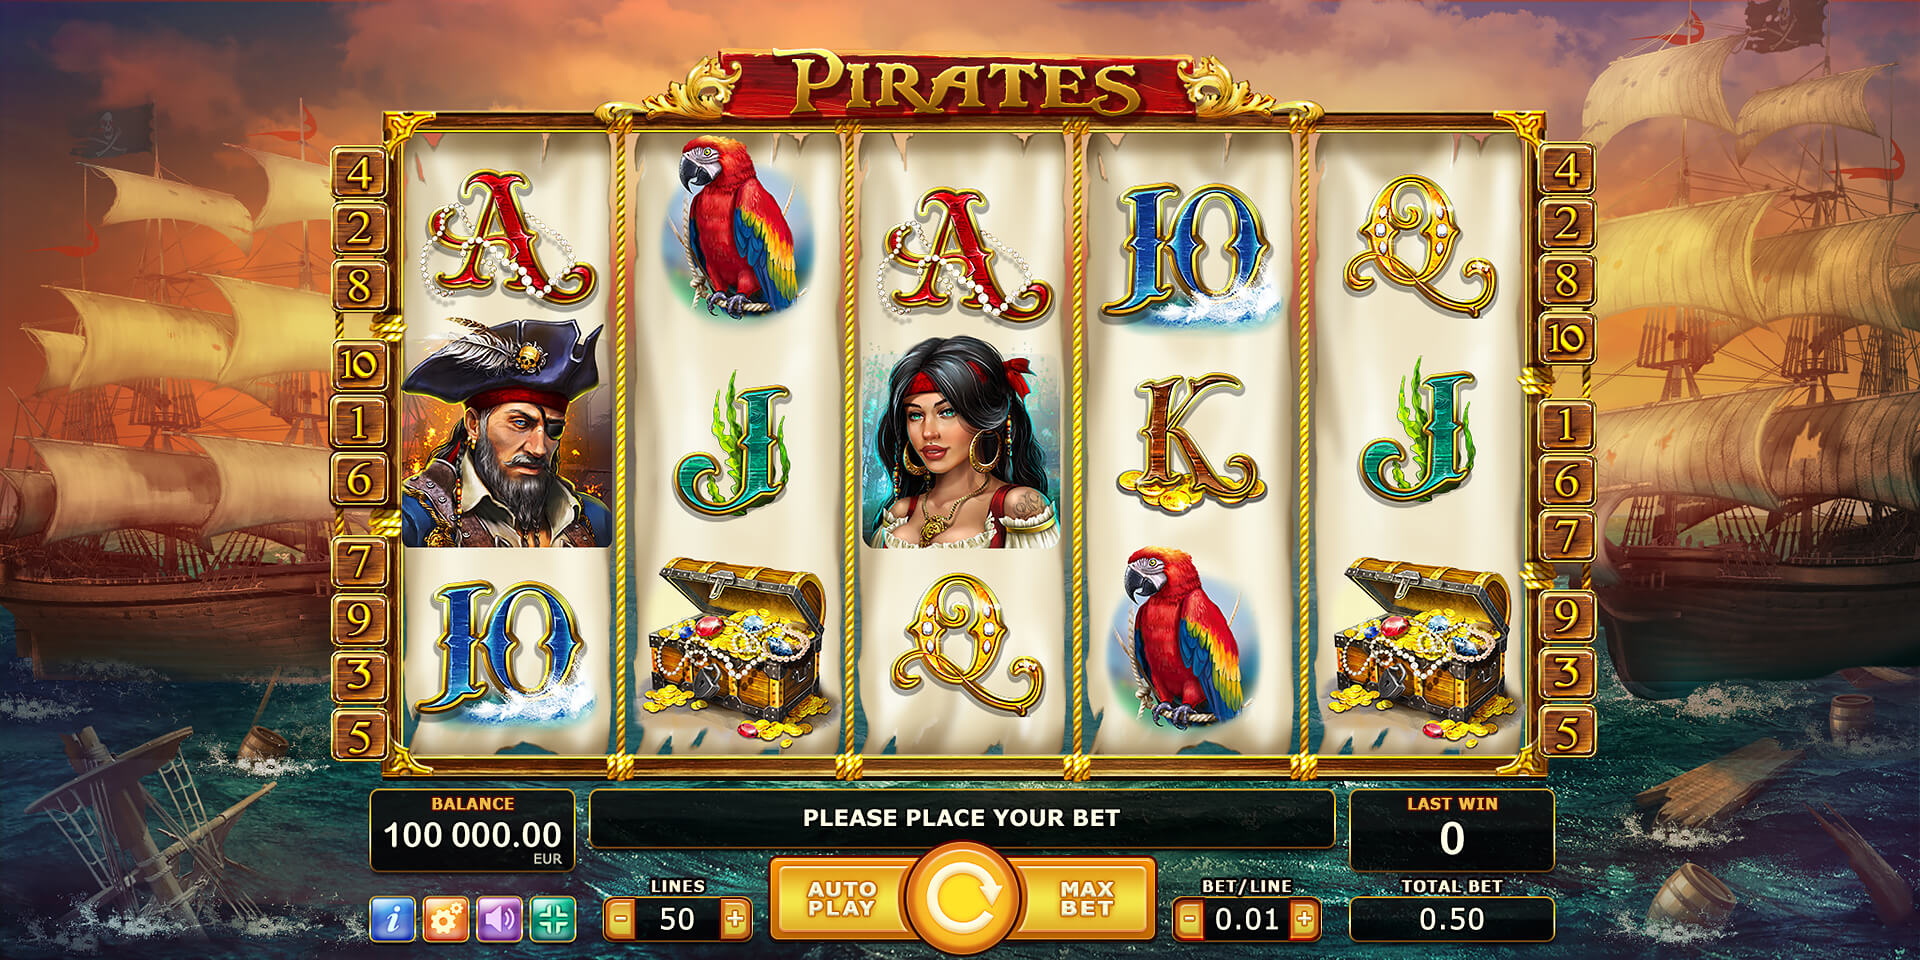 Pirates slot machine game